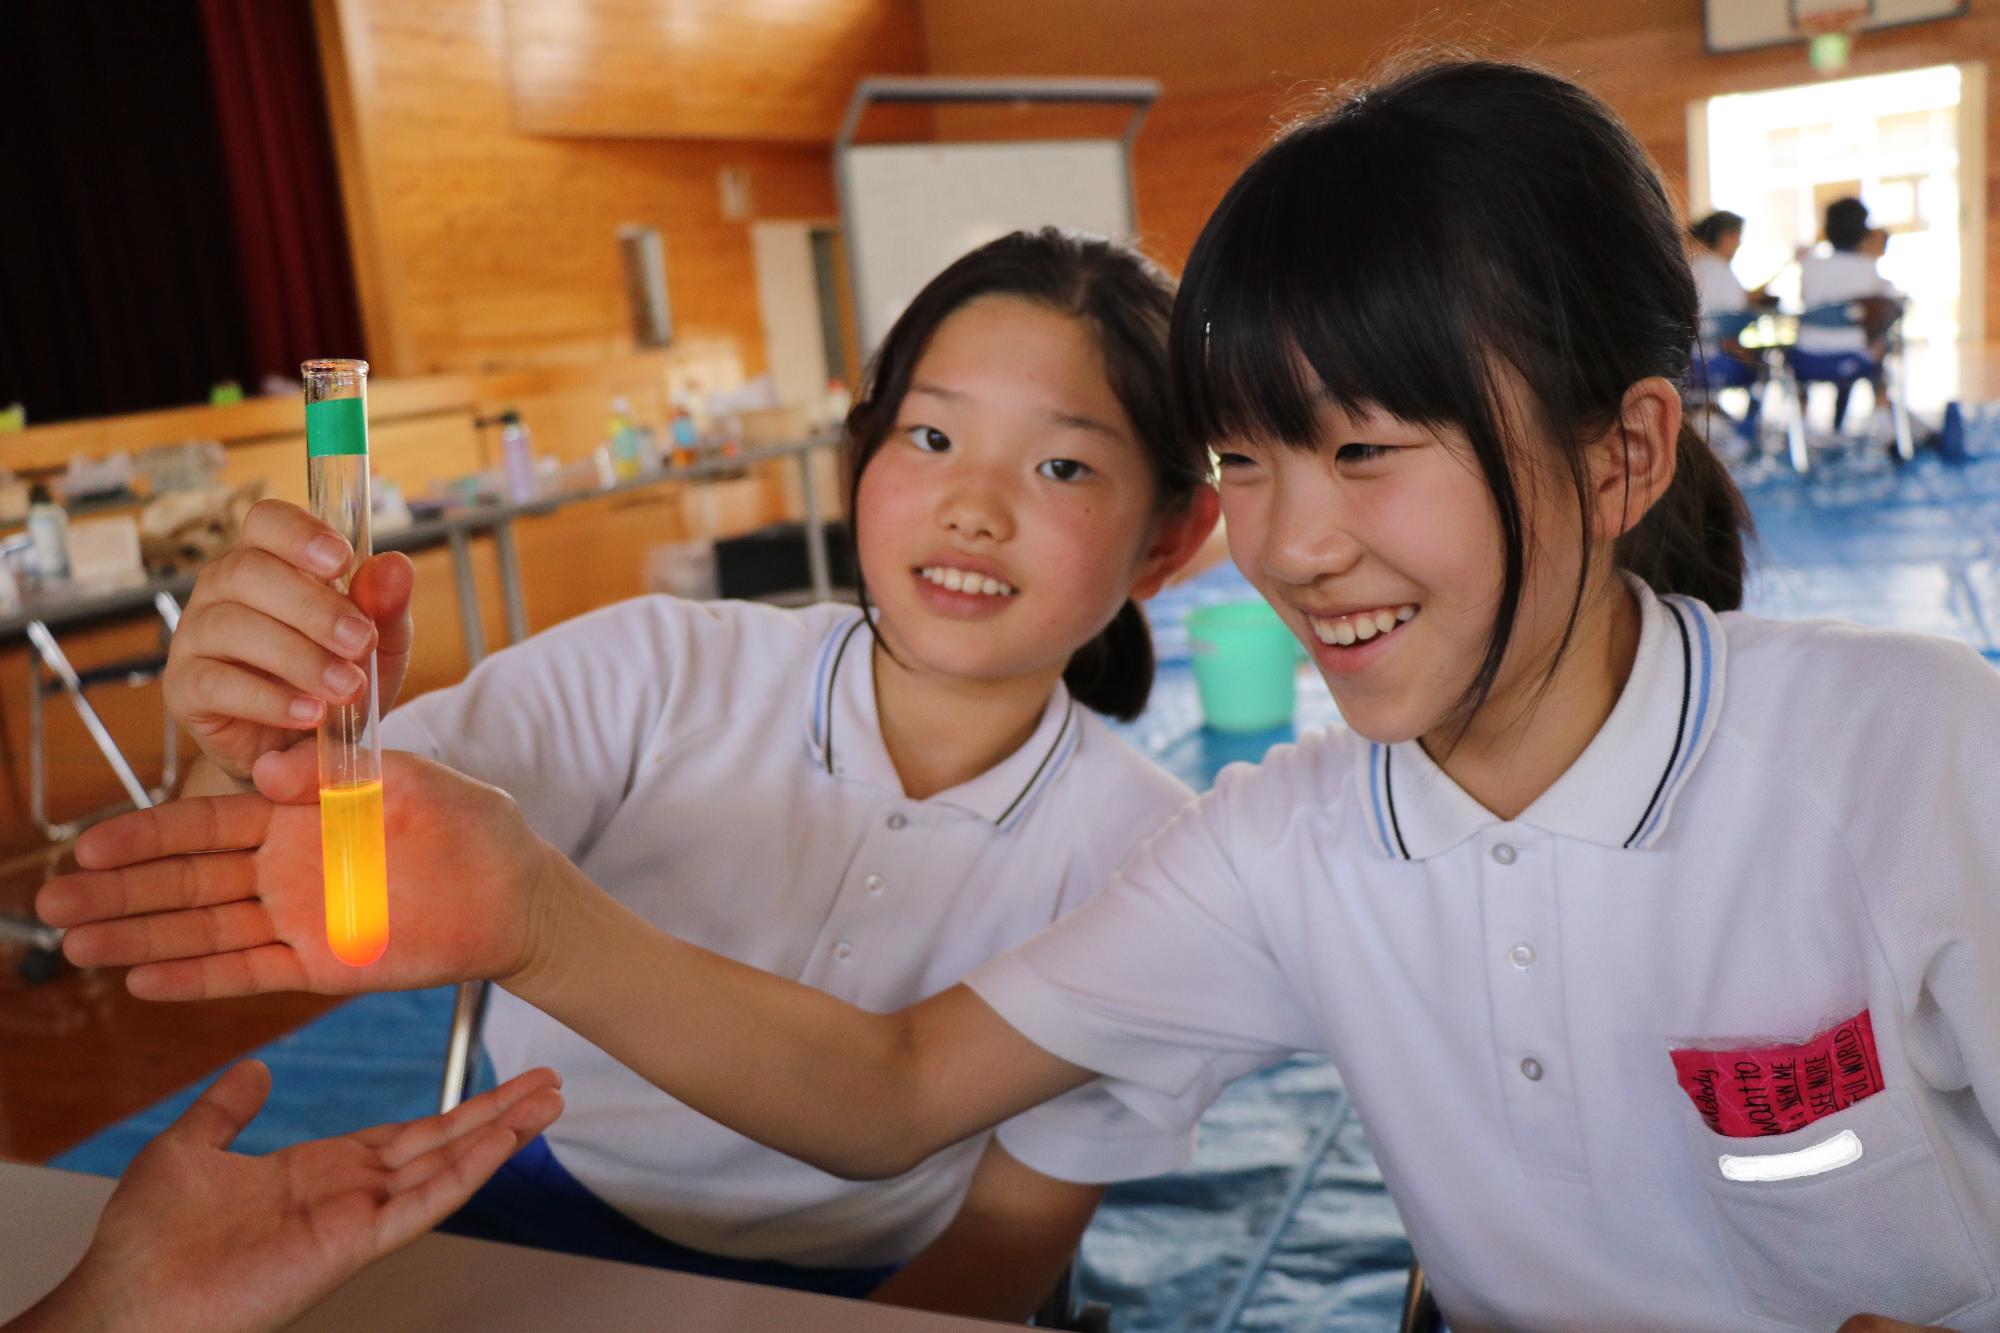 ケミカルライトの原理を実験する児童らが試験官の中の液体が光る現象を楽しんでいる写真